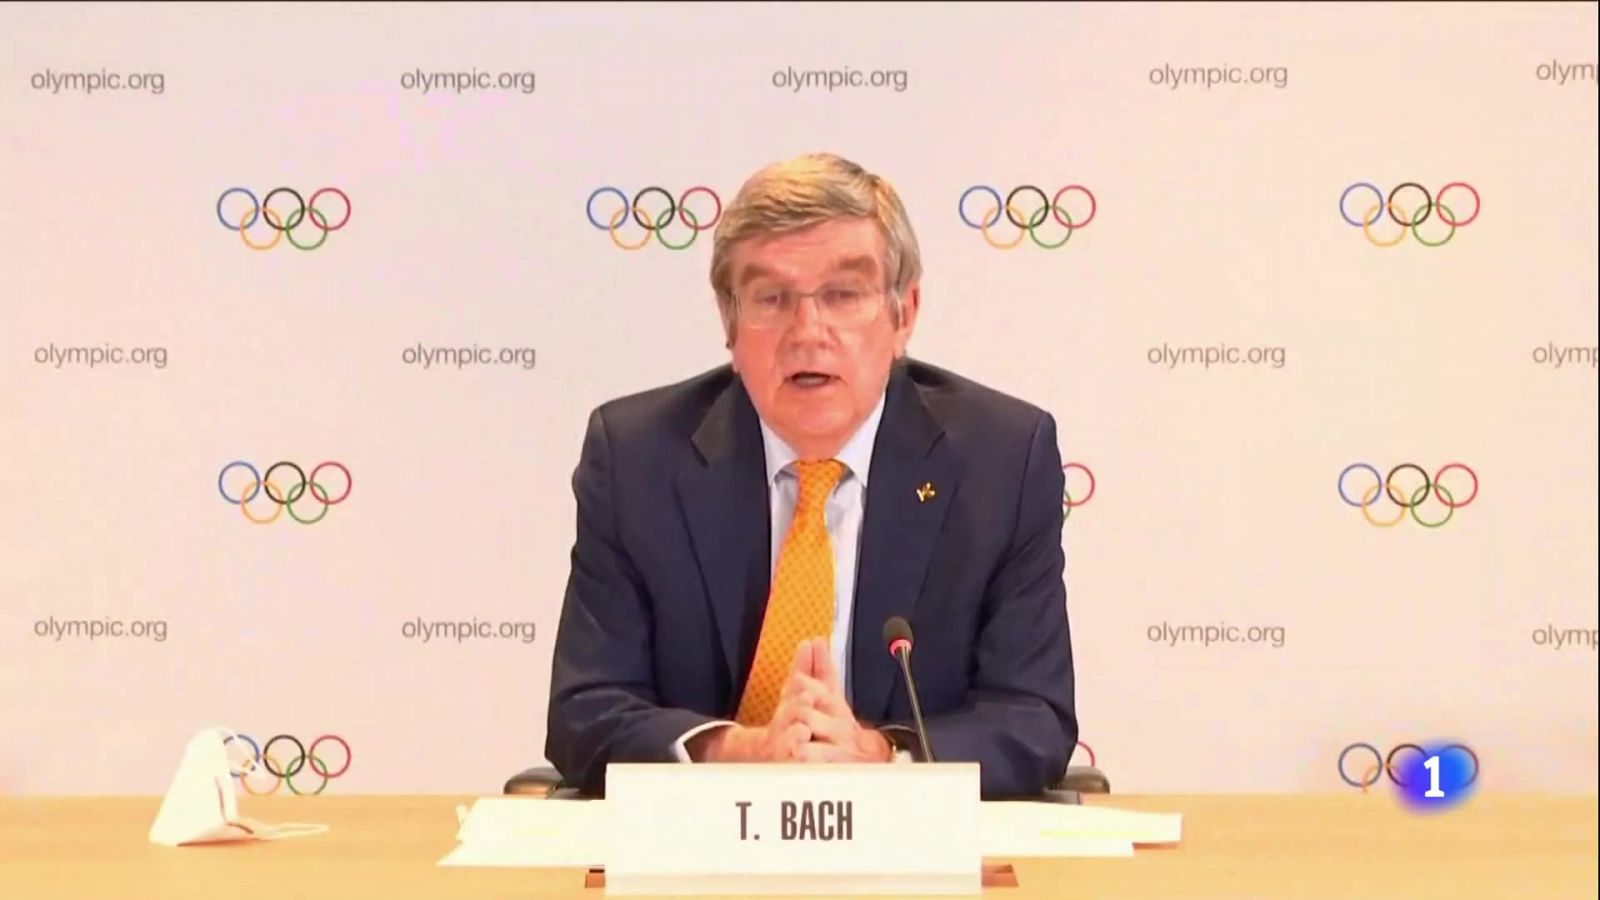 Bach: "Nuestra labor es organizar los Juegos, no cancelarlos"